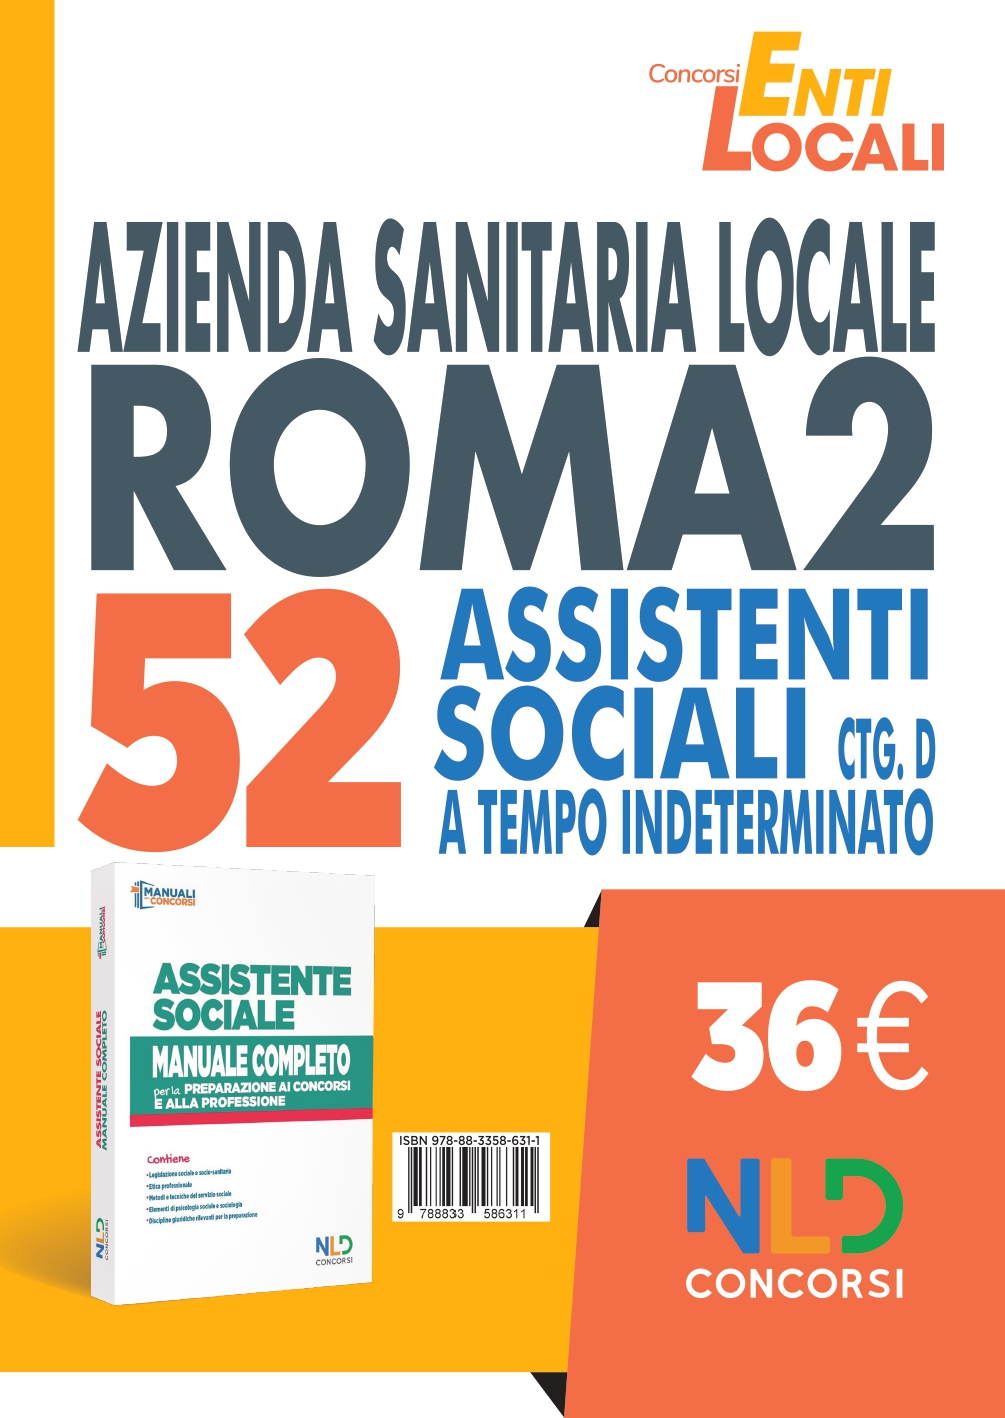 Concorso Asl Roma 2: Manuale completo per il Concorso di 52 Assistenti Sociali Ctg D a tempo indeterminato